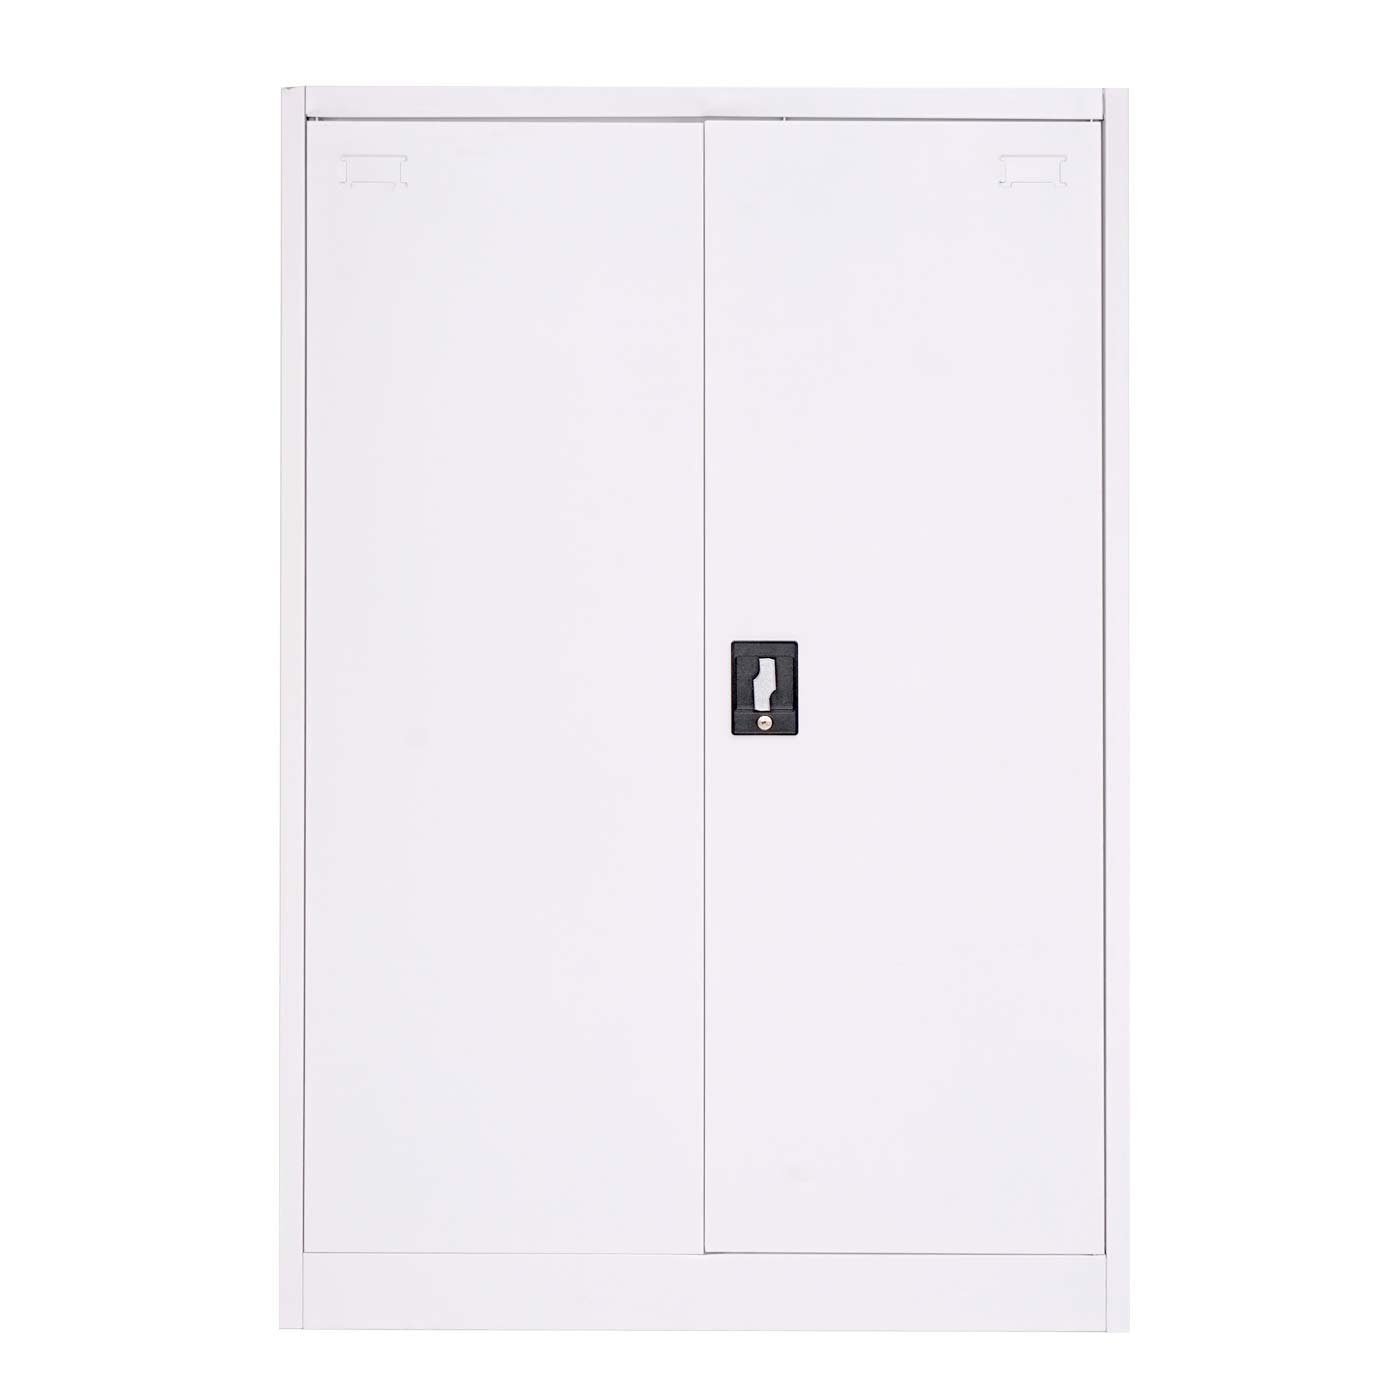 Abschließbar, verstellbare MCW-H17 MCW Türen Regalböden, weiß weiß zwei | Aktenschrank